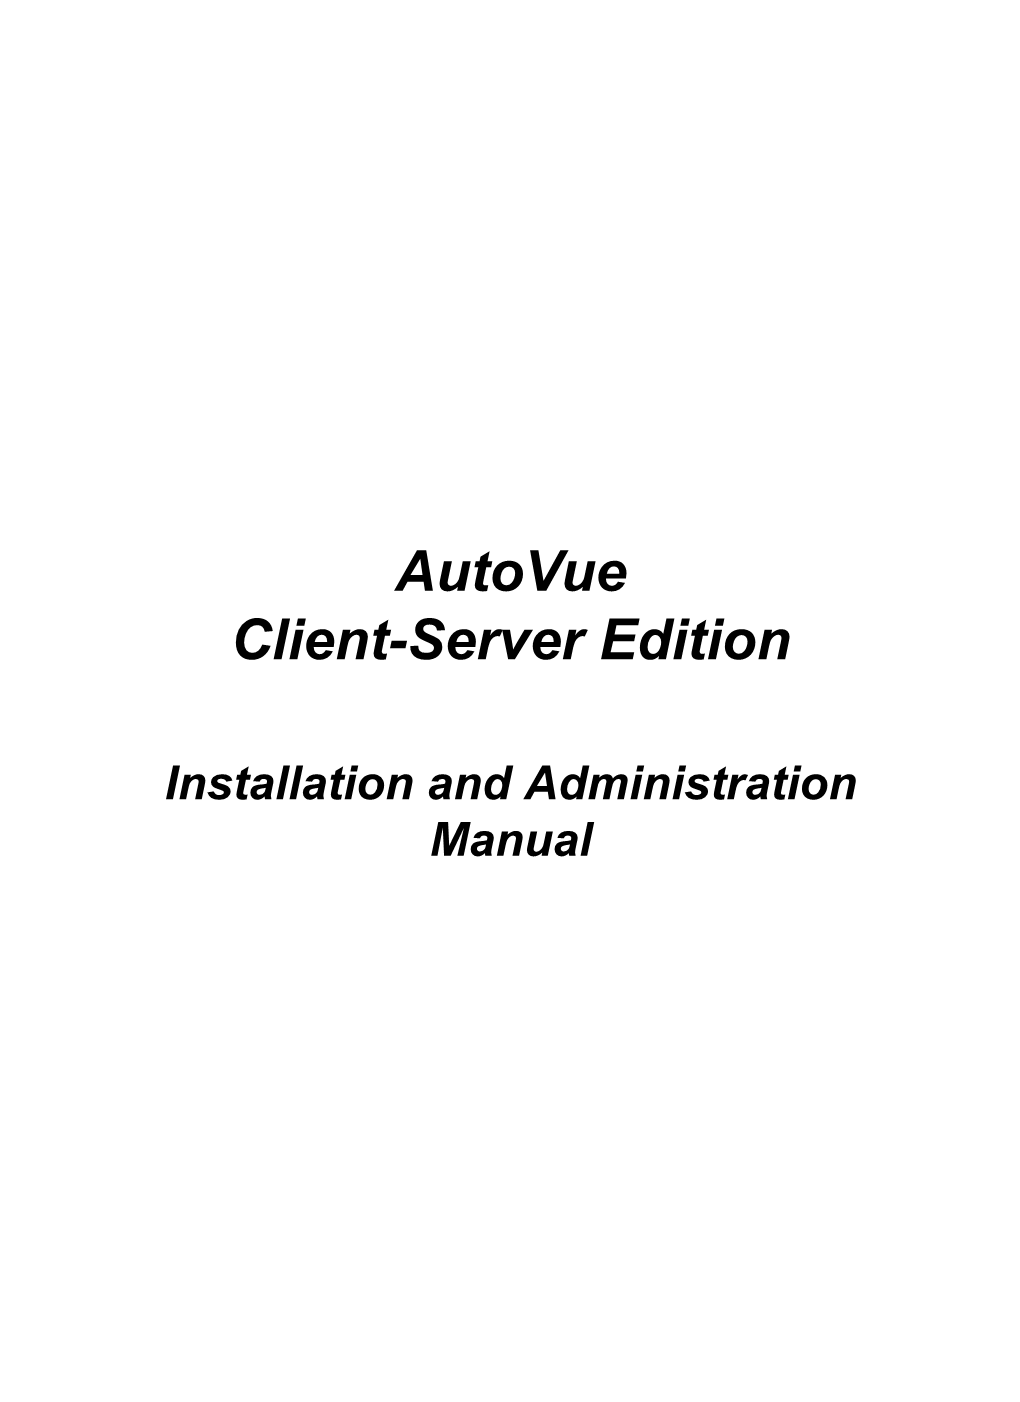 Autovue Client-Server Edition